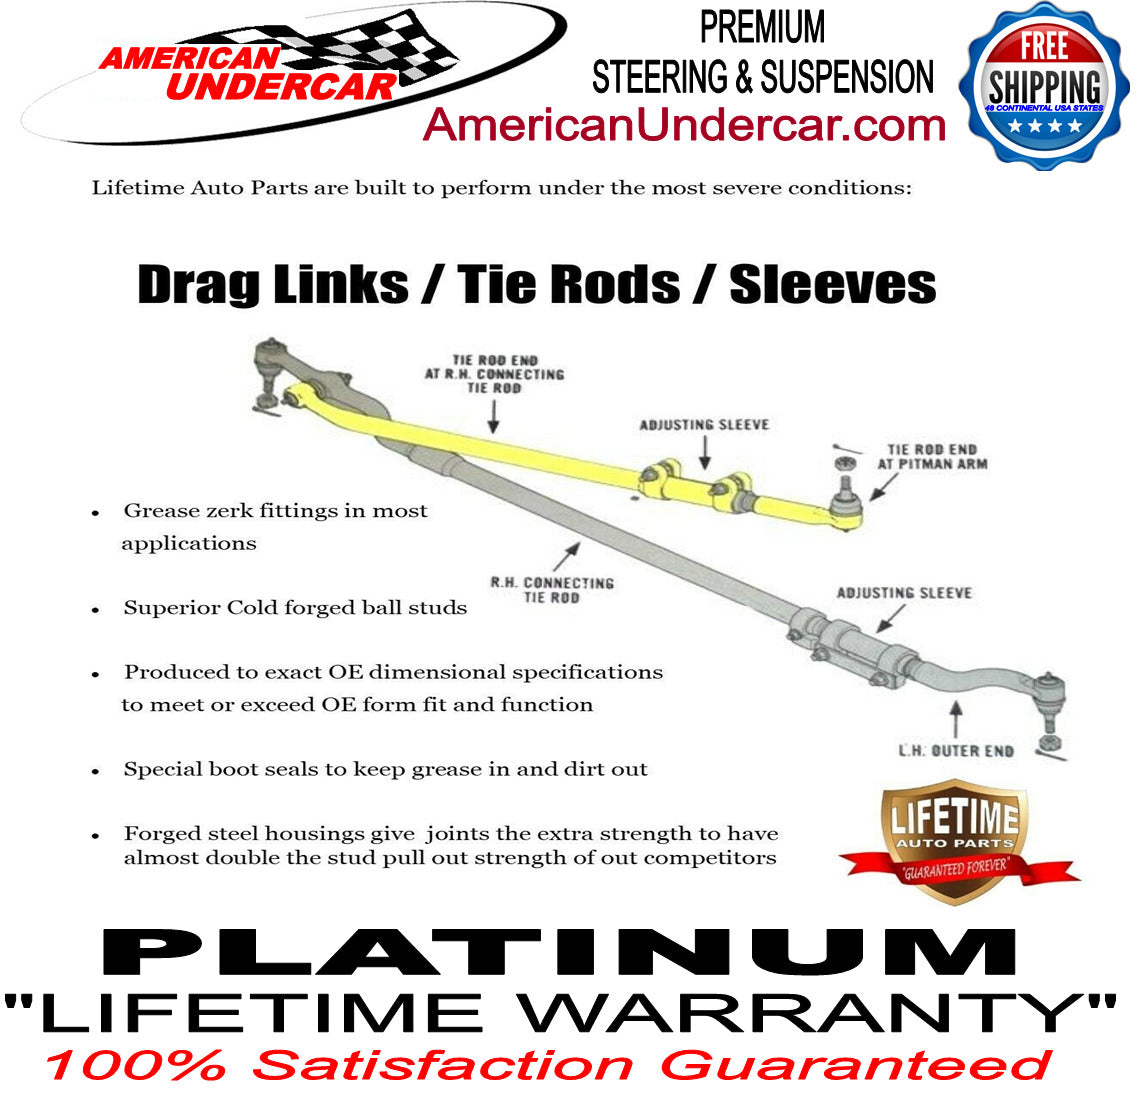 Lifetime New T Design Upgrade Steering Kit for 2009-2013 Dodge Ram 2500, 3500 4x4